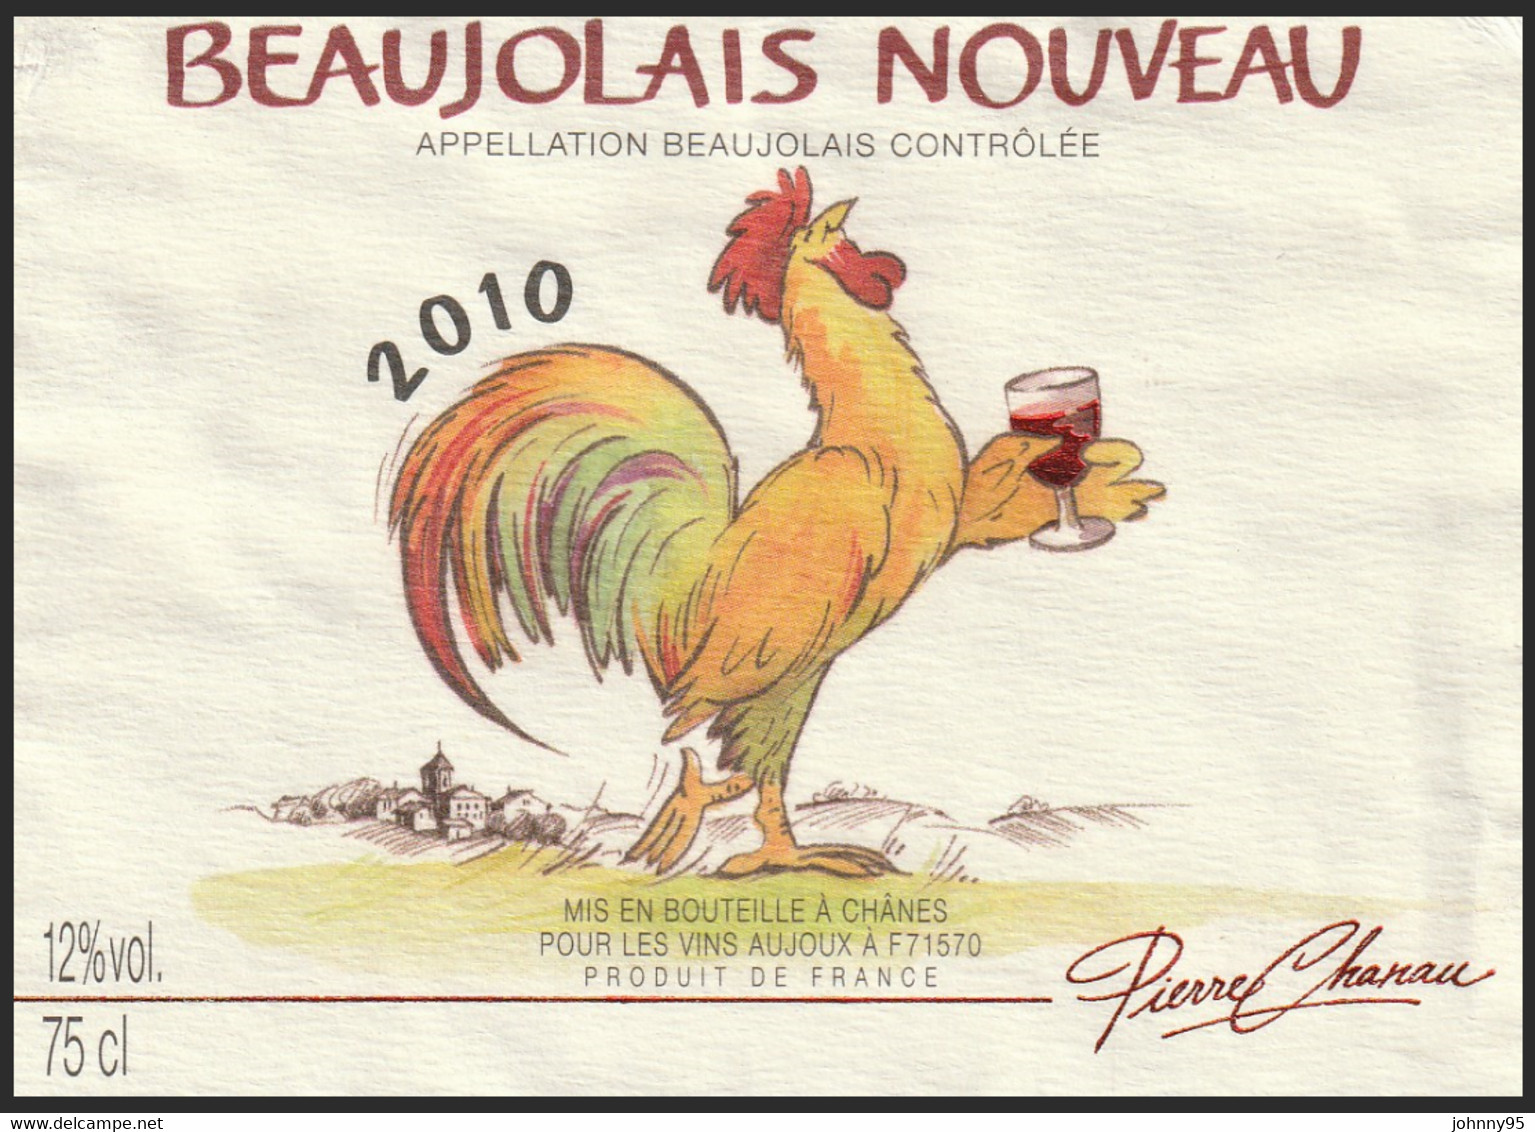 Coq Sur étiquette De Vin - Beaujolais Nouveau 2010 Pierre Chanau - Vins Aujoux : Chânes Saône Et Loire - Galli